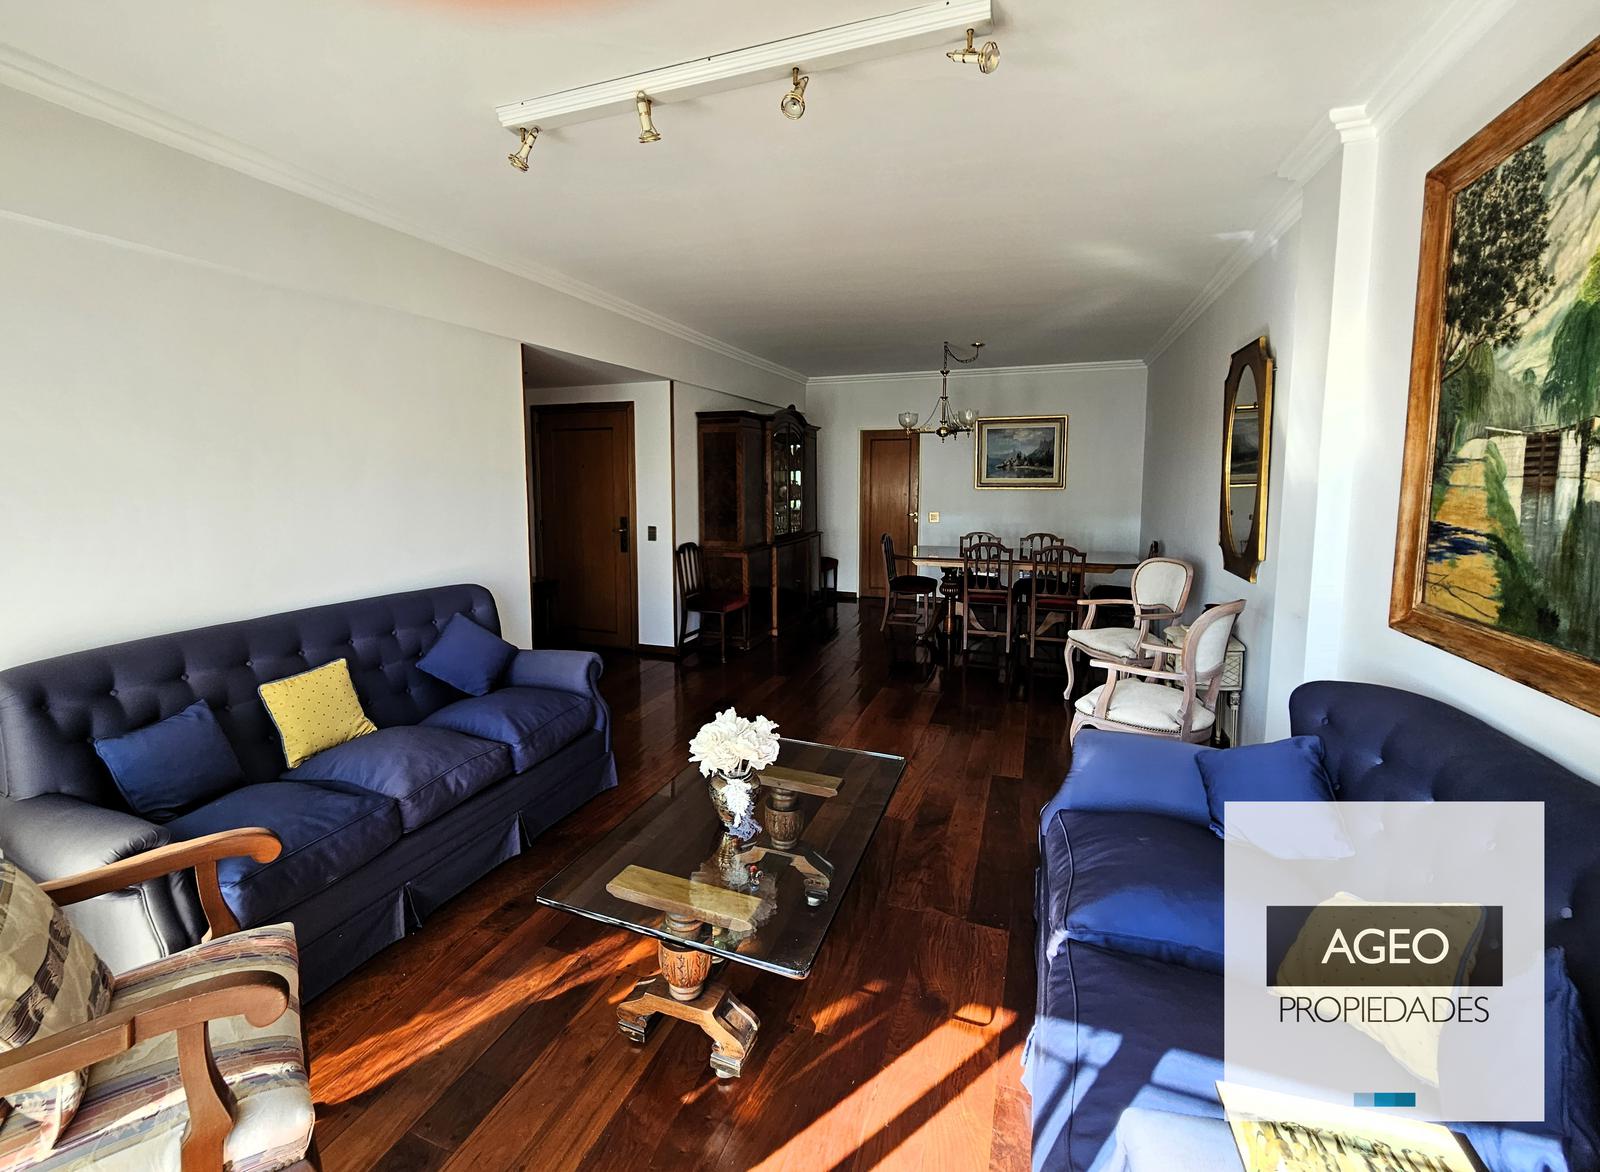 #4317031 | Sale | Apartment | Belgrano (AGEO PROPIEDADES)